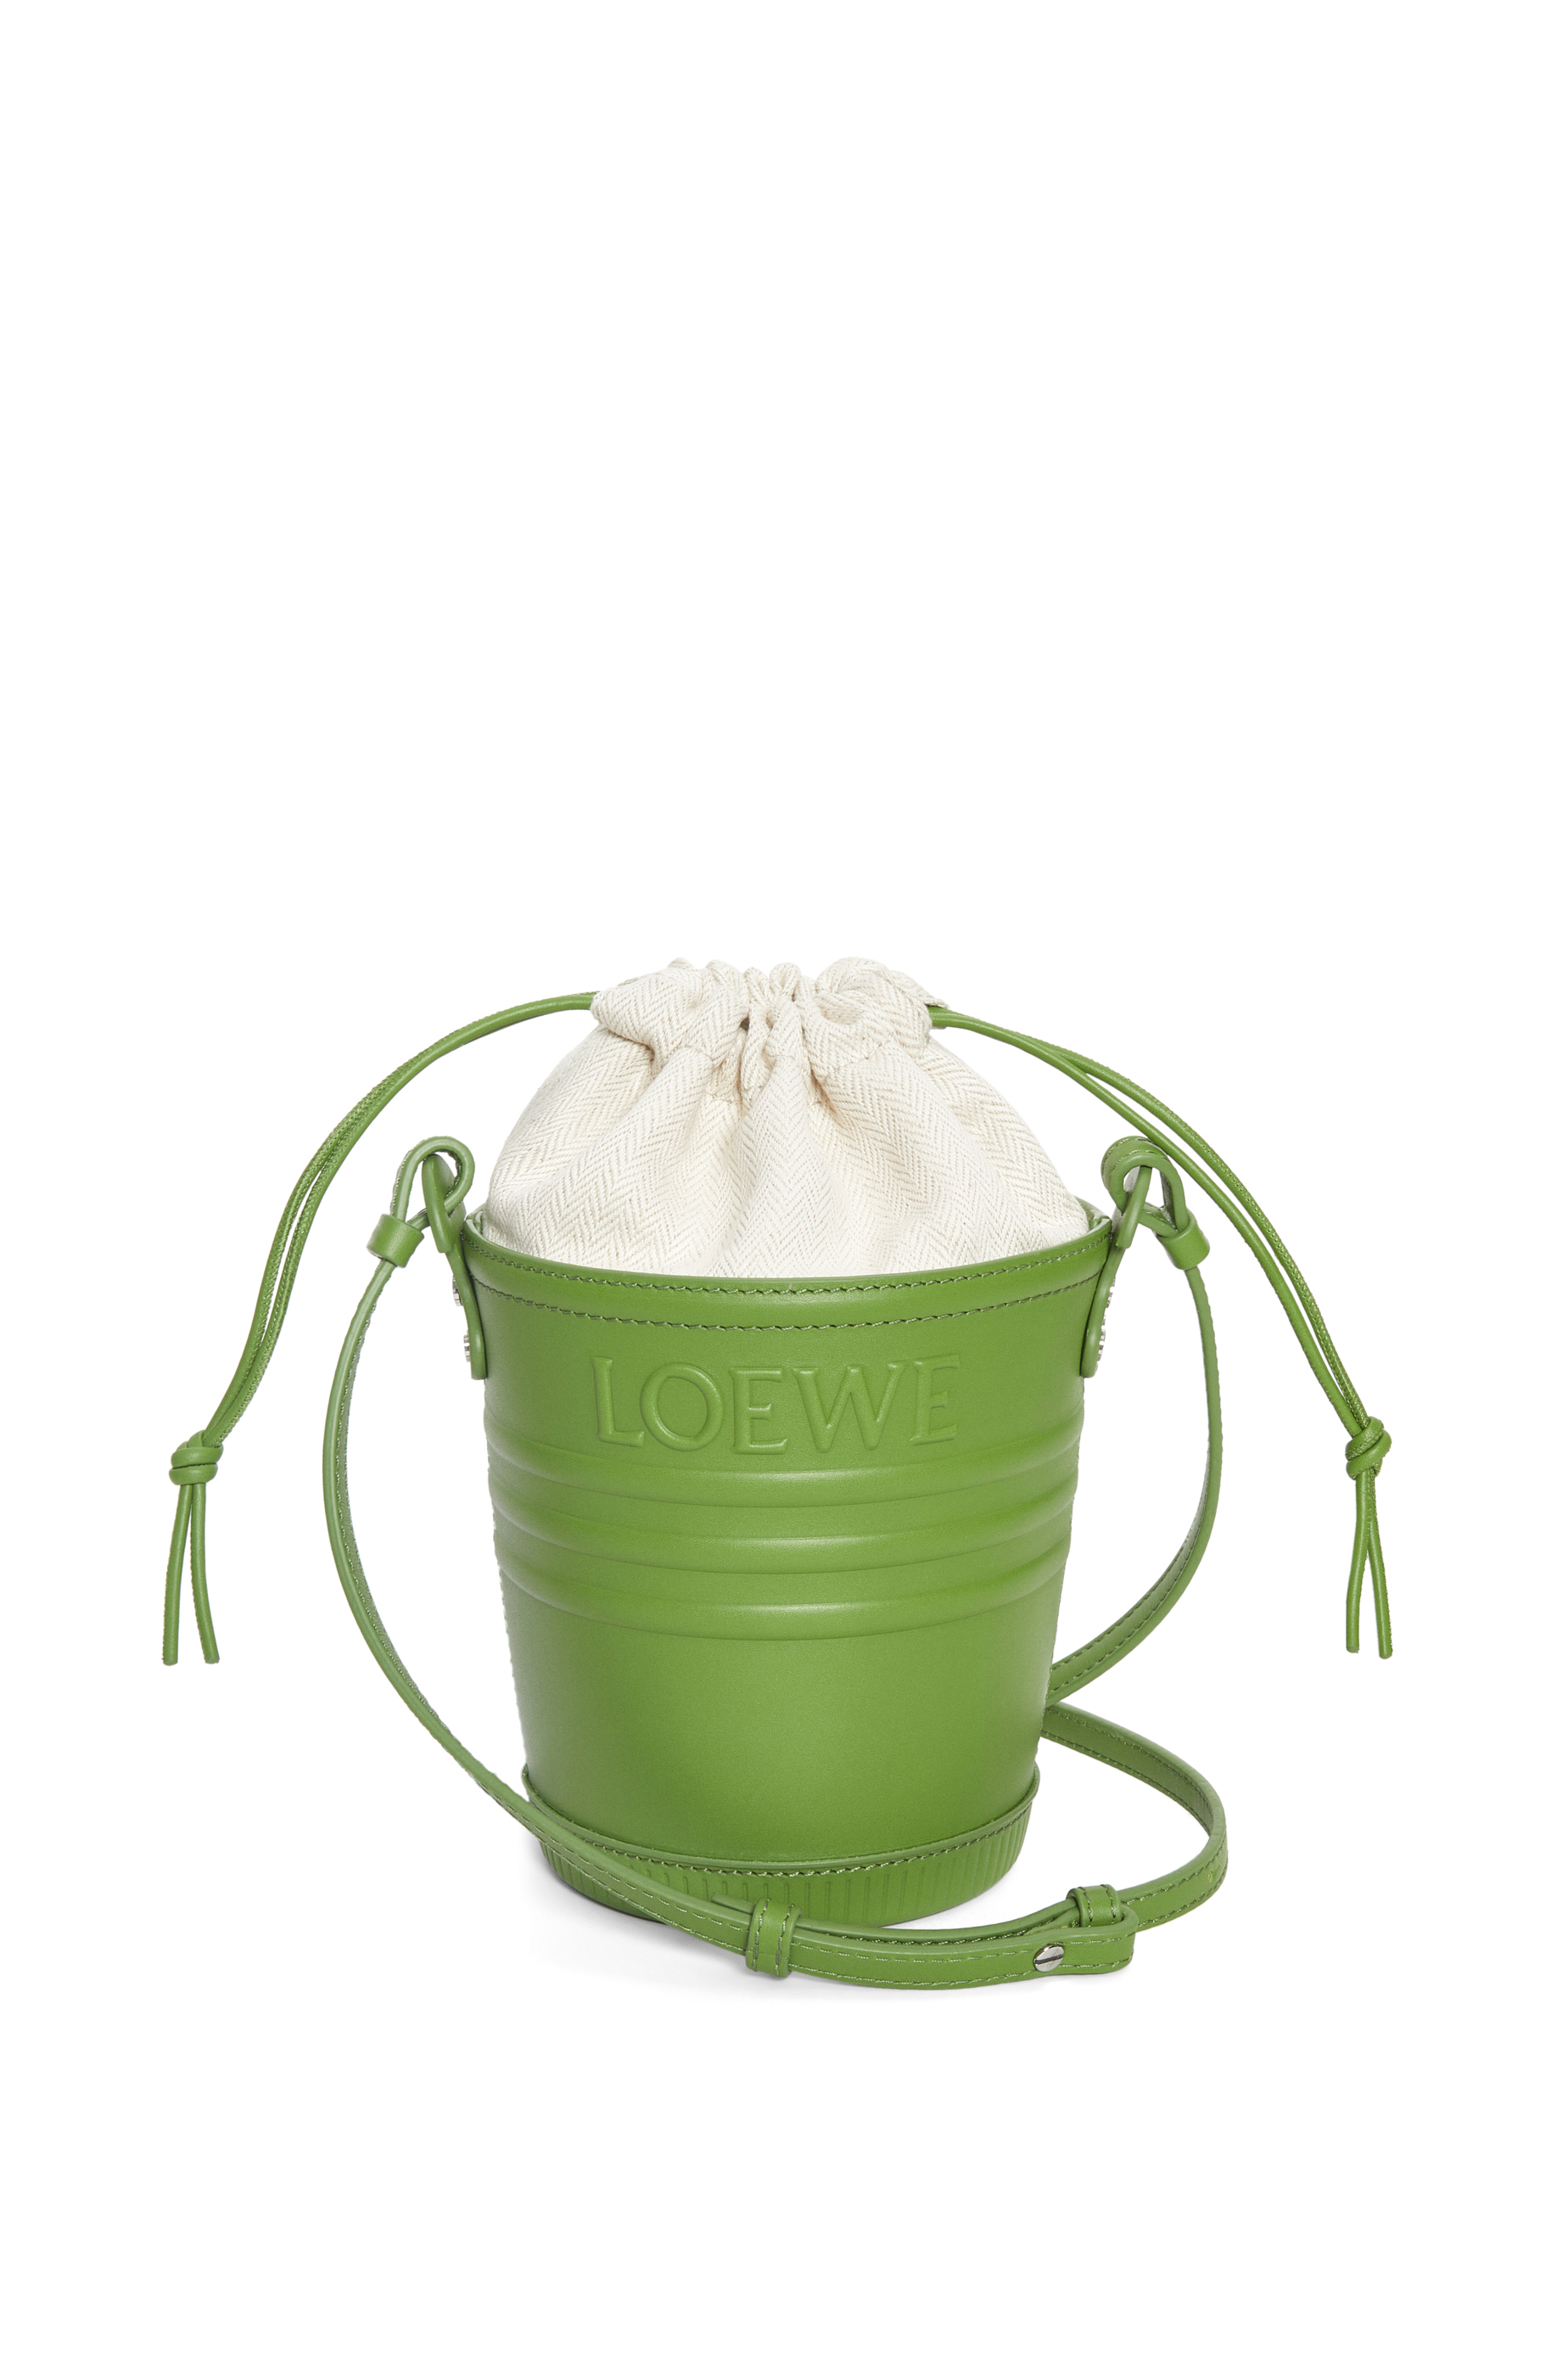 Loewe x Paula Ibiza Bags | our Basket Bag collection | Loewe - LOEWE